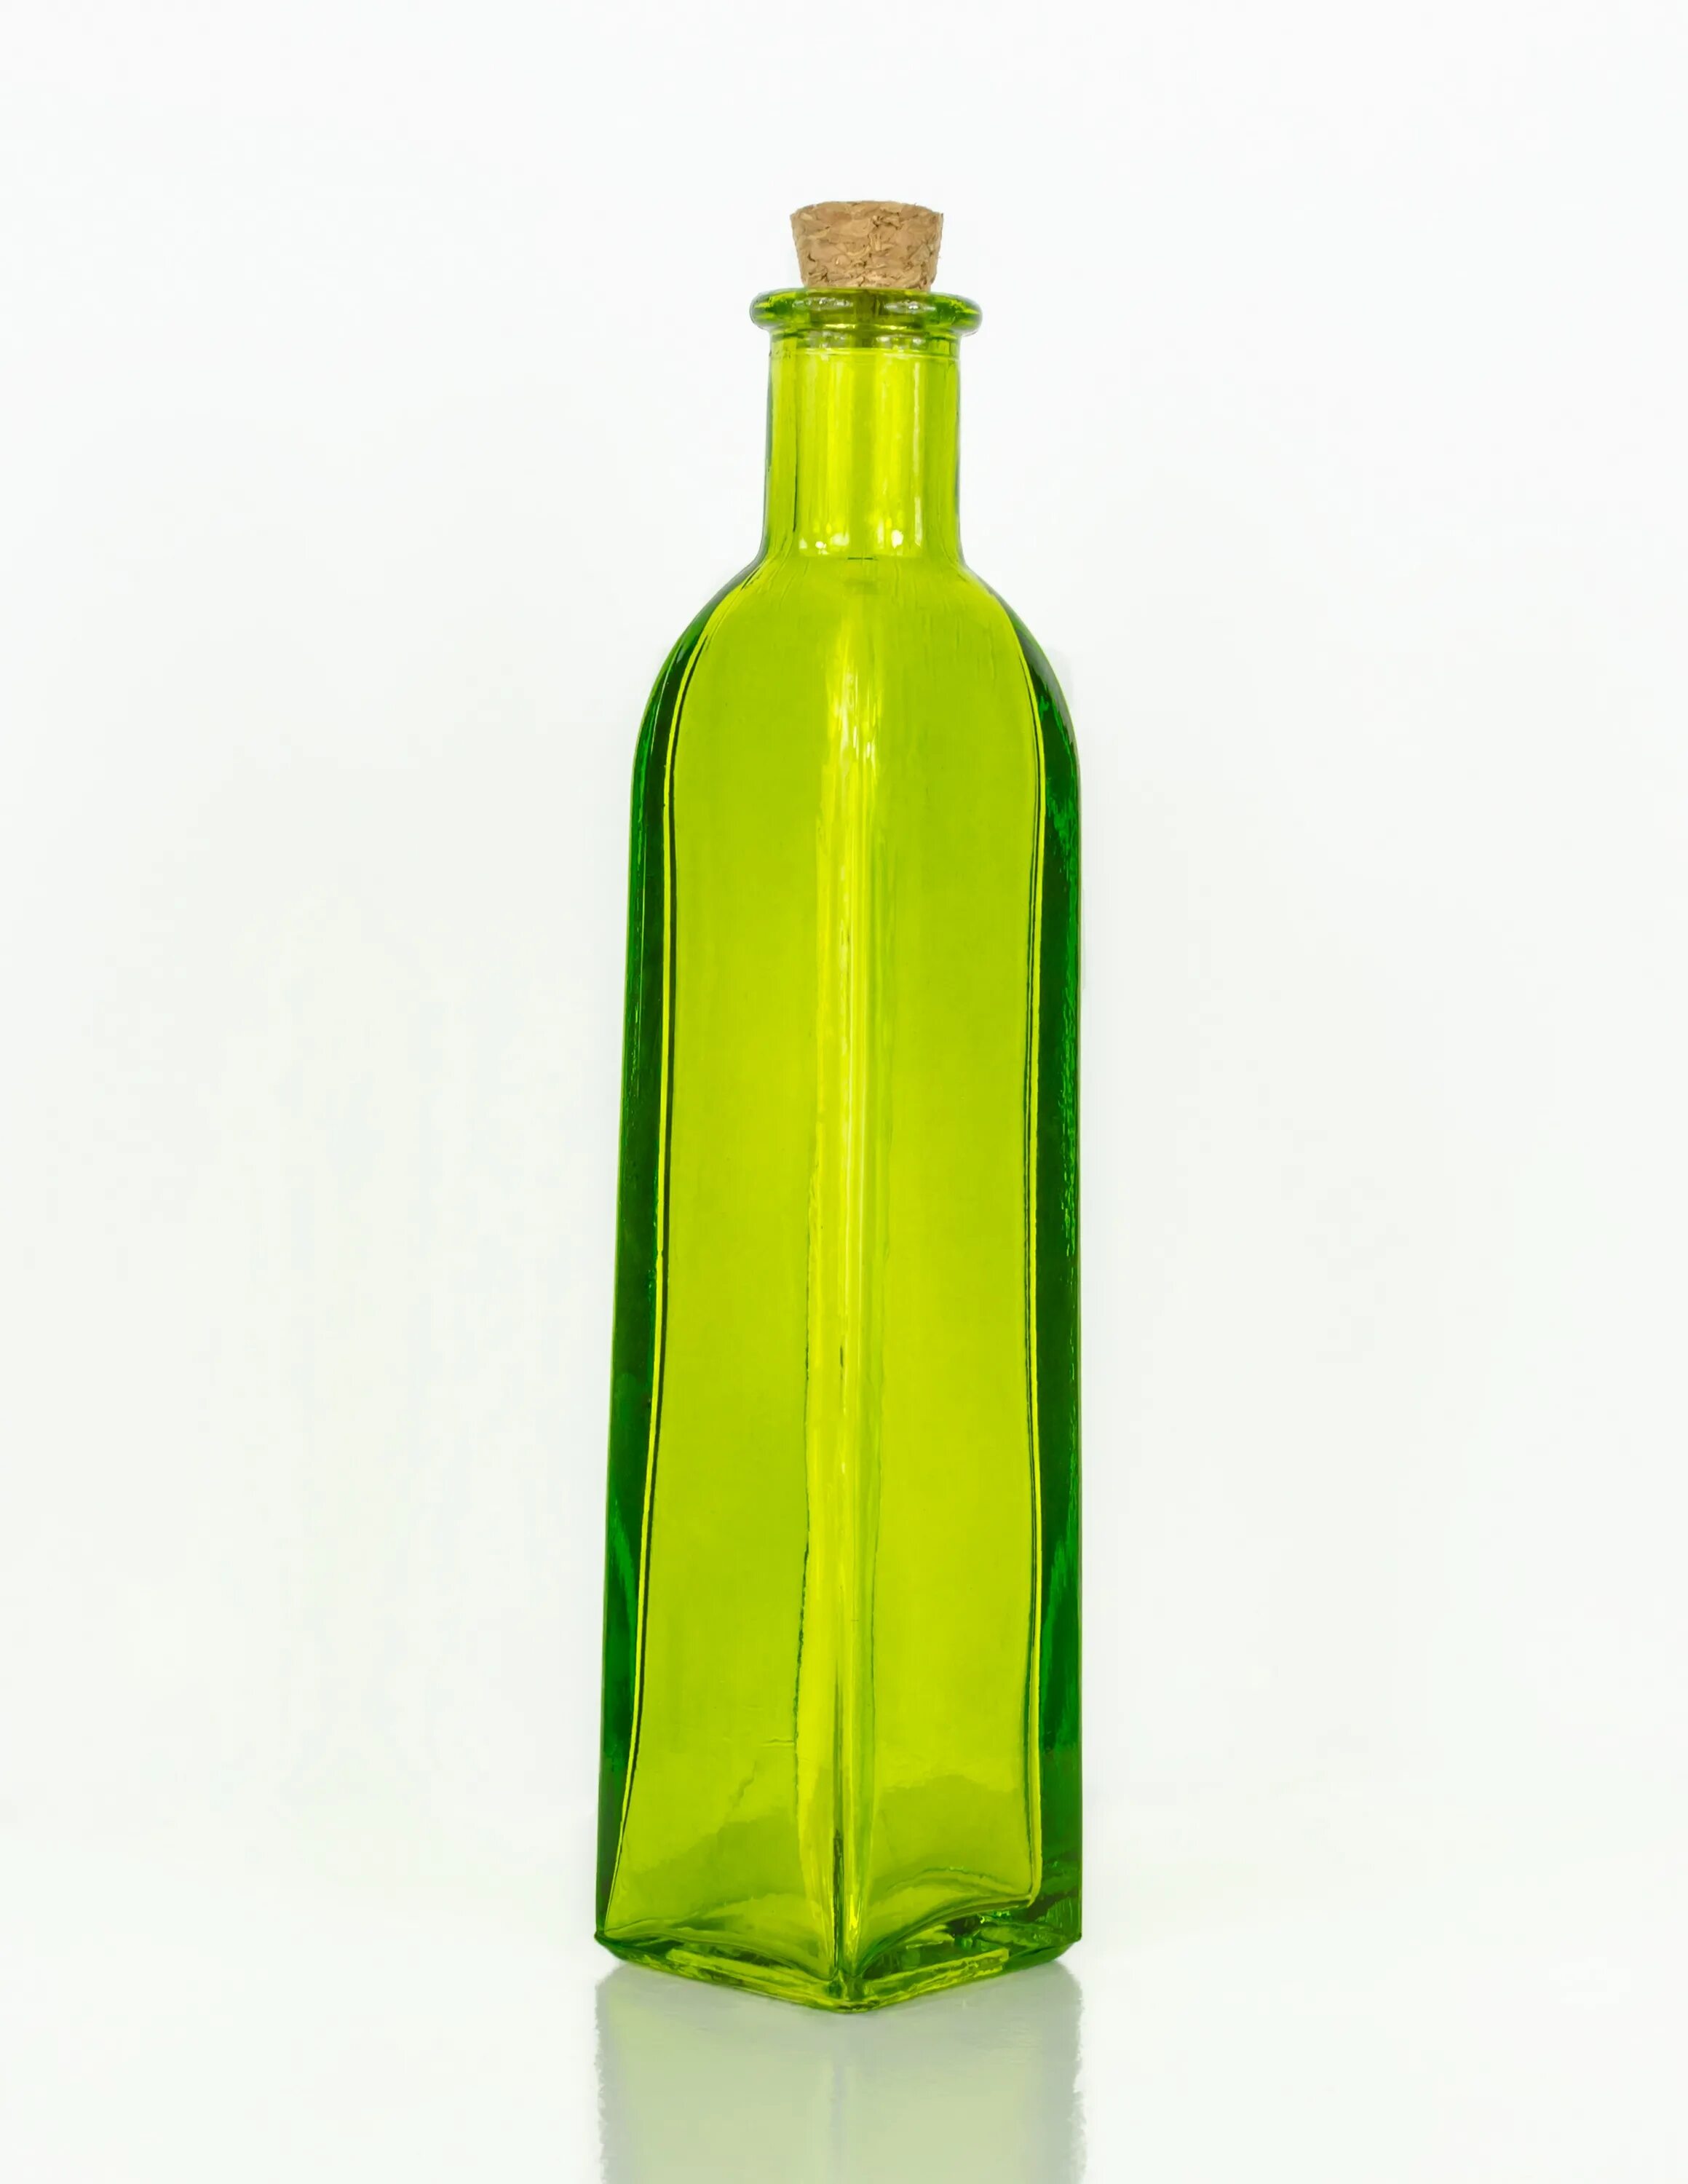 Стеклянная бутылка. Бутылка зеленая стеклянная. Цветные стеклянные бутылки. Квадратная стеклянная бутылка. Бутылки зеленого цвета